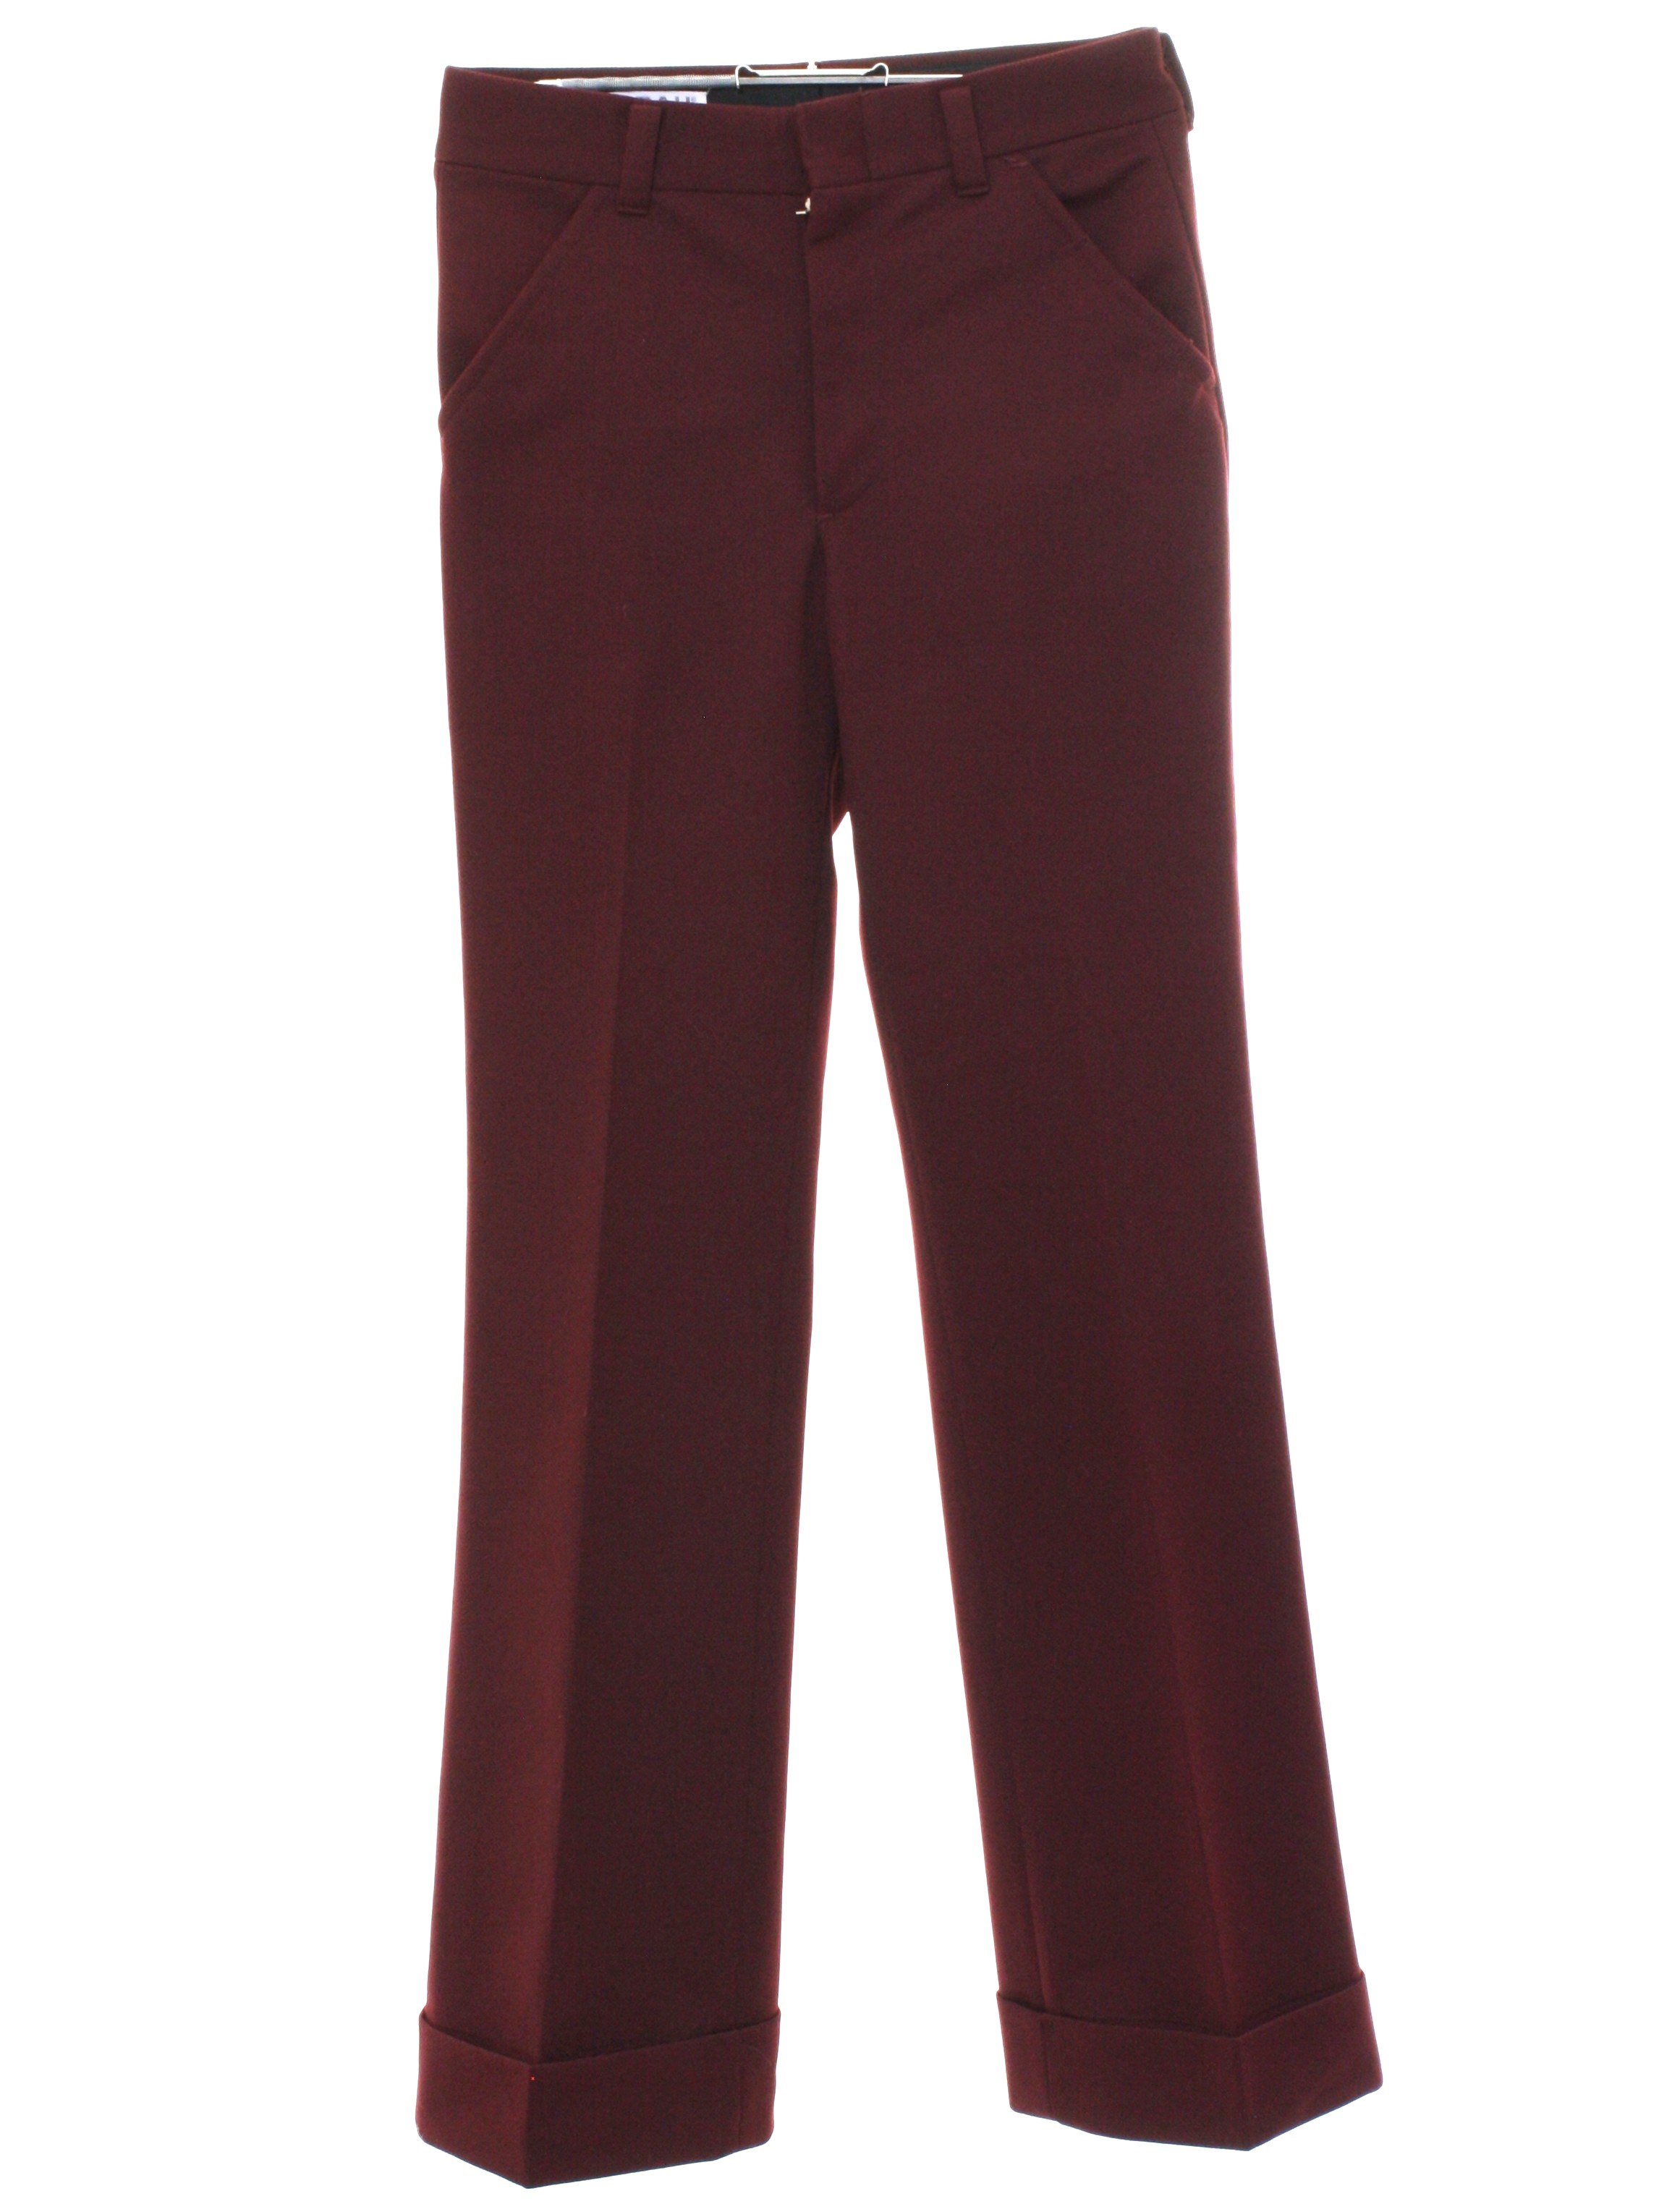 70's Vintage Bellbottom Pants: 70s -Farah- Mens burgundy solid colored ...